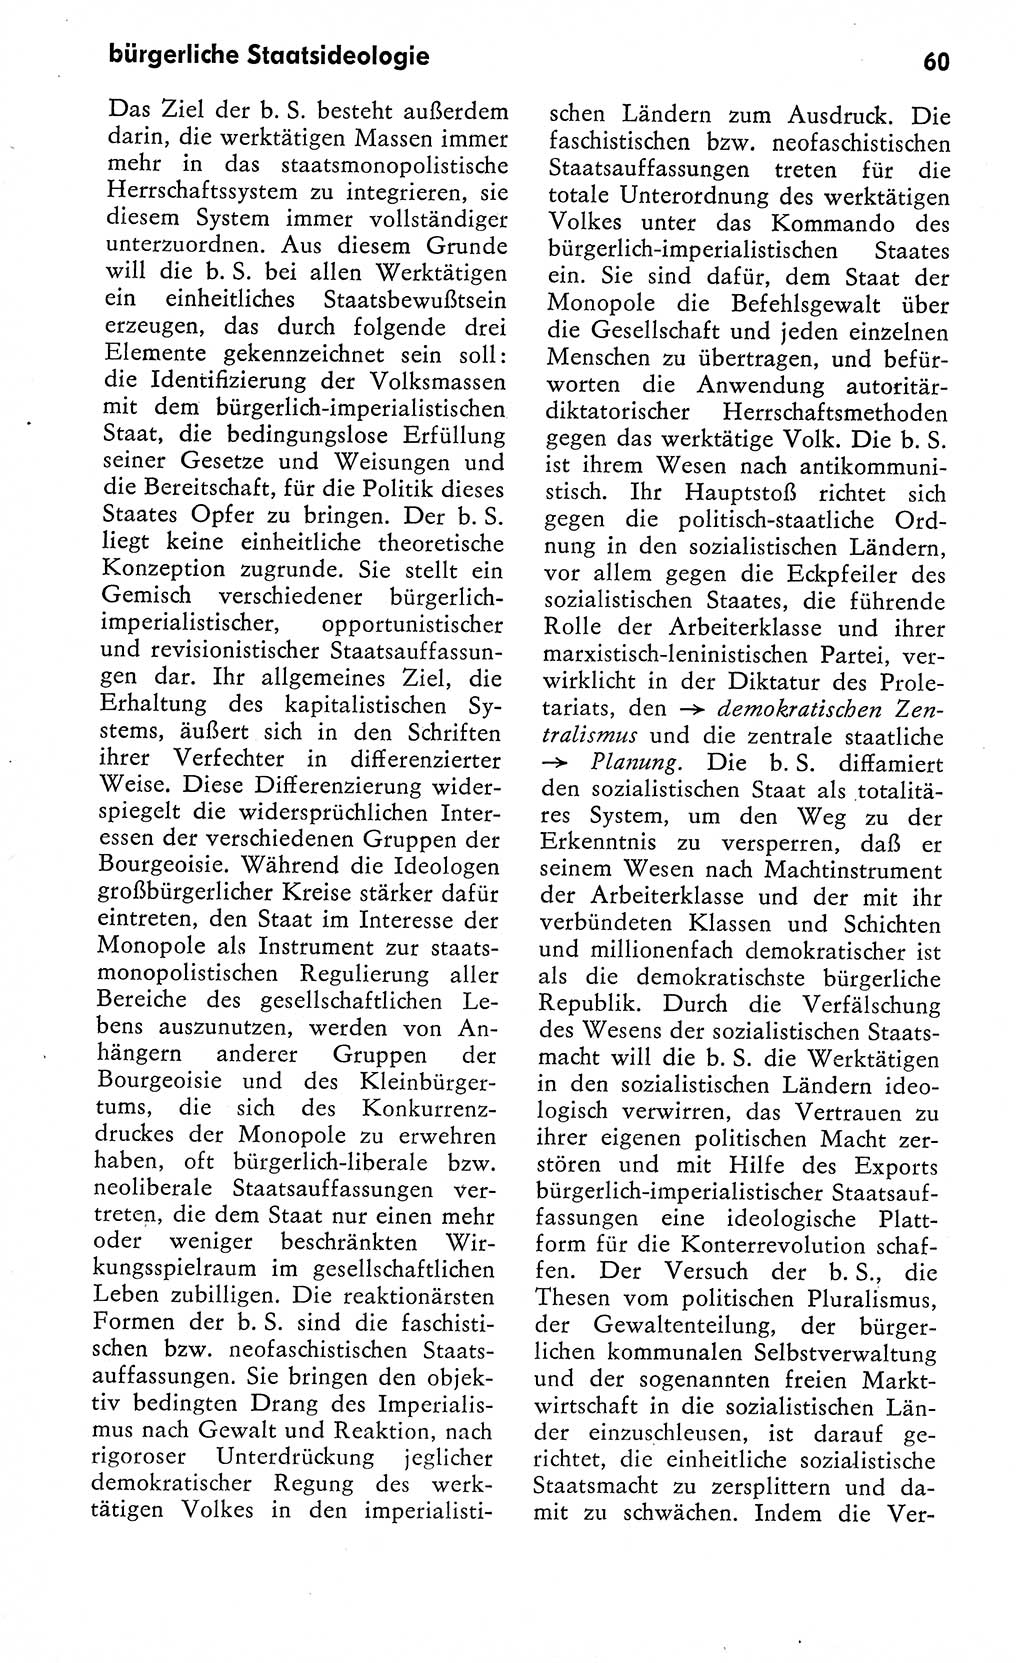 Wörterbuch zum sozialistischen Staat [Deutsche Demokratische Republik (DDR)] 1974, Seite 60 (Wb. soz. St. DDR 1974, S. 60)